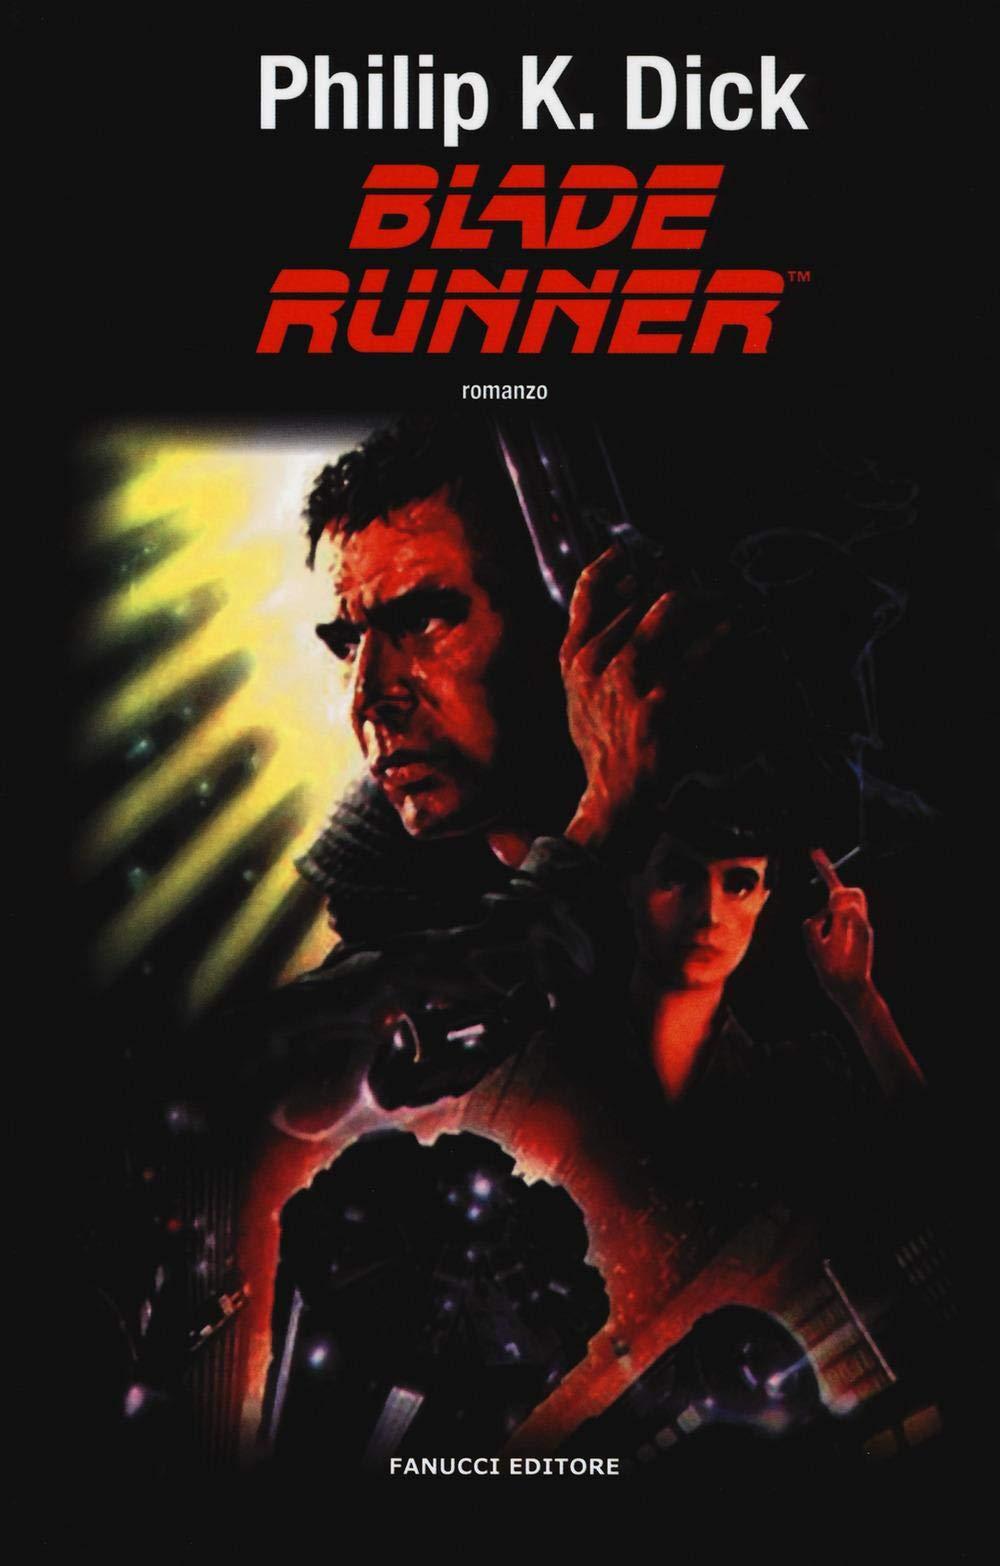 Libro "Blade Runner" di Philip K. Dick